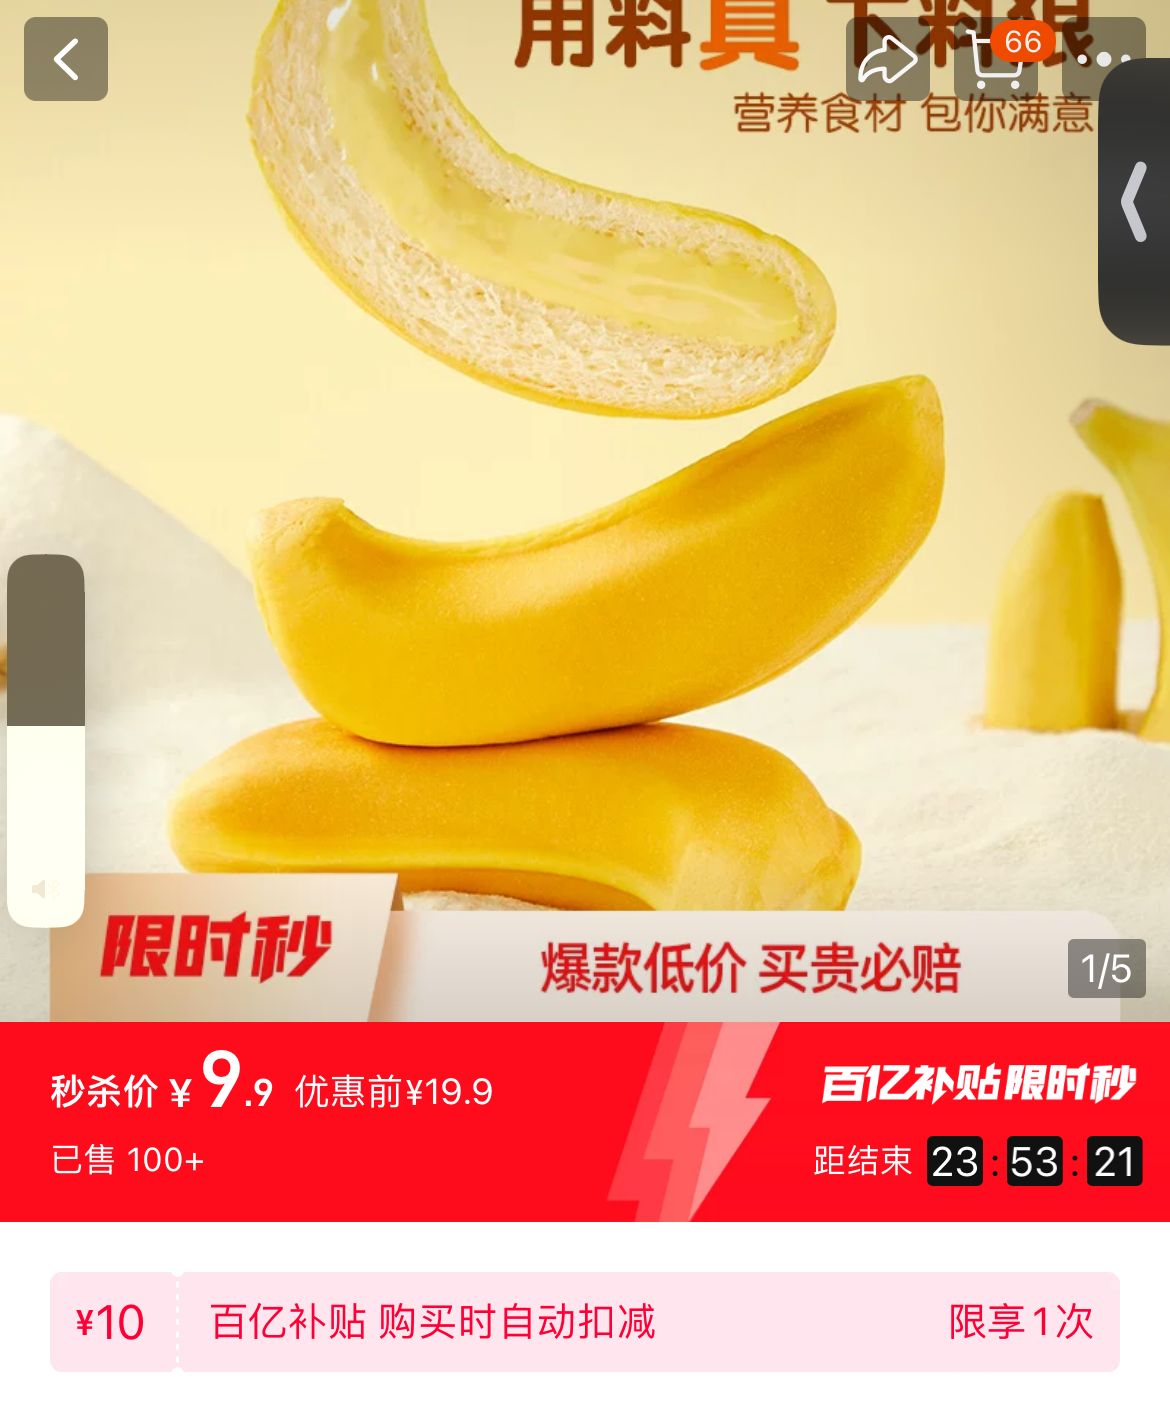 9.9‼限时百亿补贴
a1早餐香蕉面包248g
 CZ00